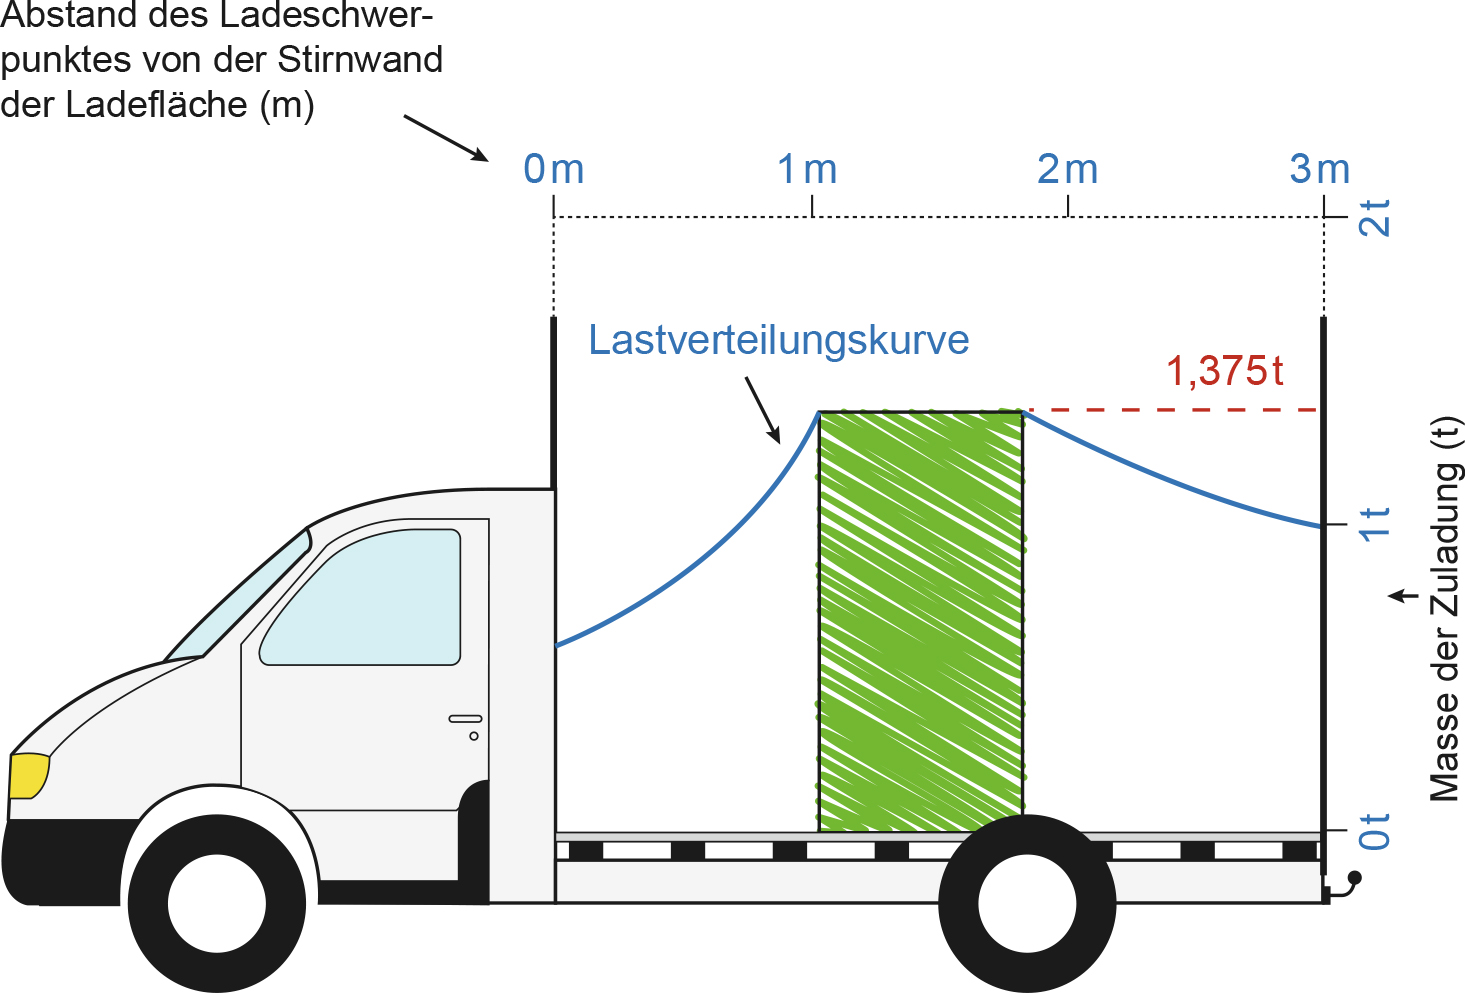 Lastenverteilungsplan für einen Kleintransporter mit einer zulässigen Gesamtmasse bis 3,5t